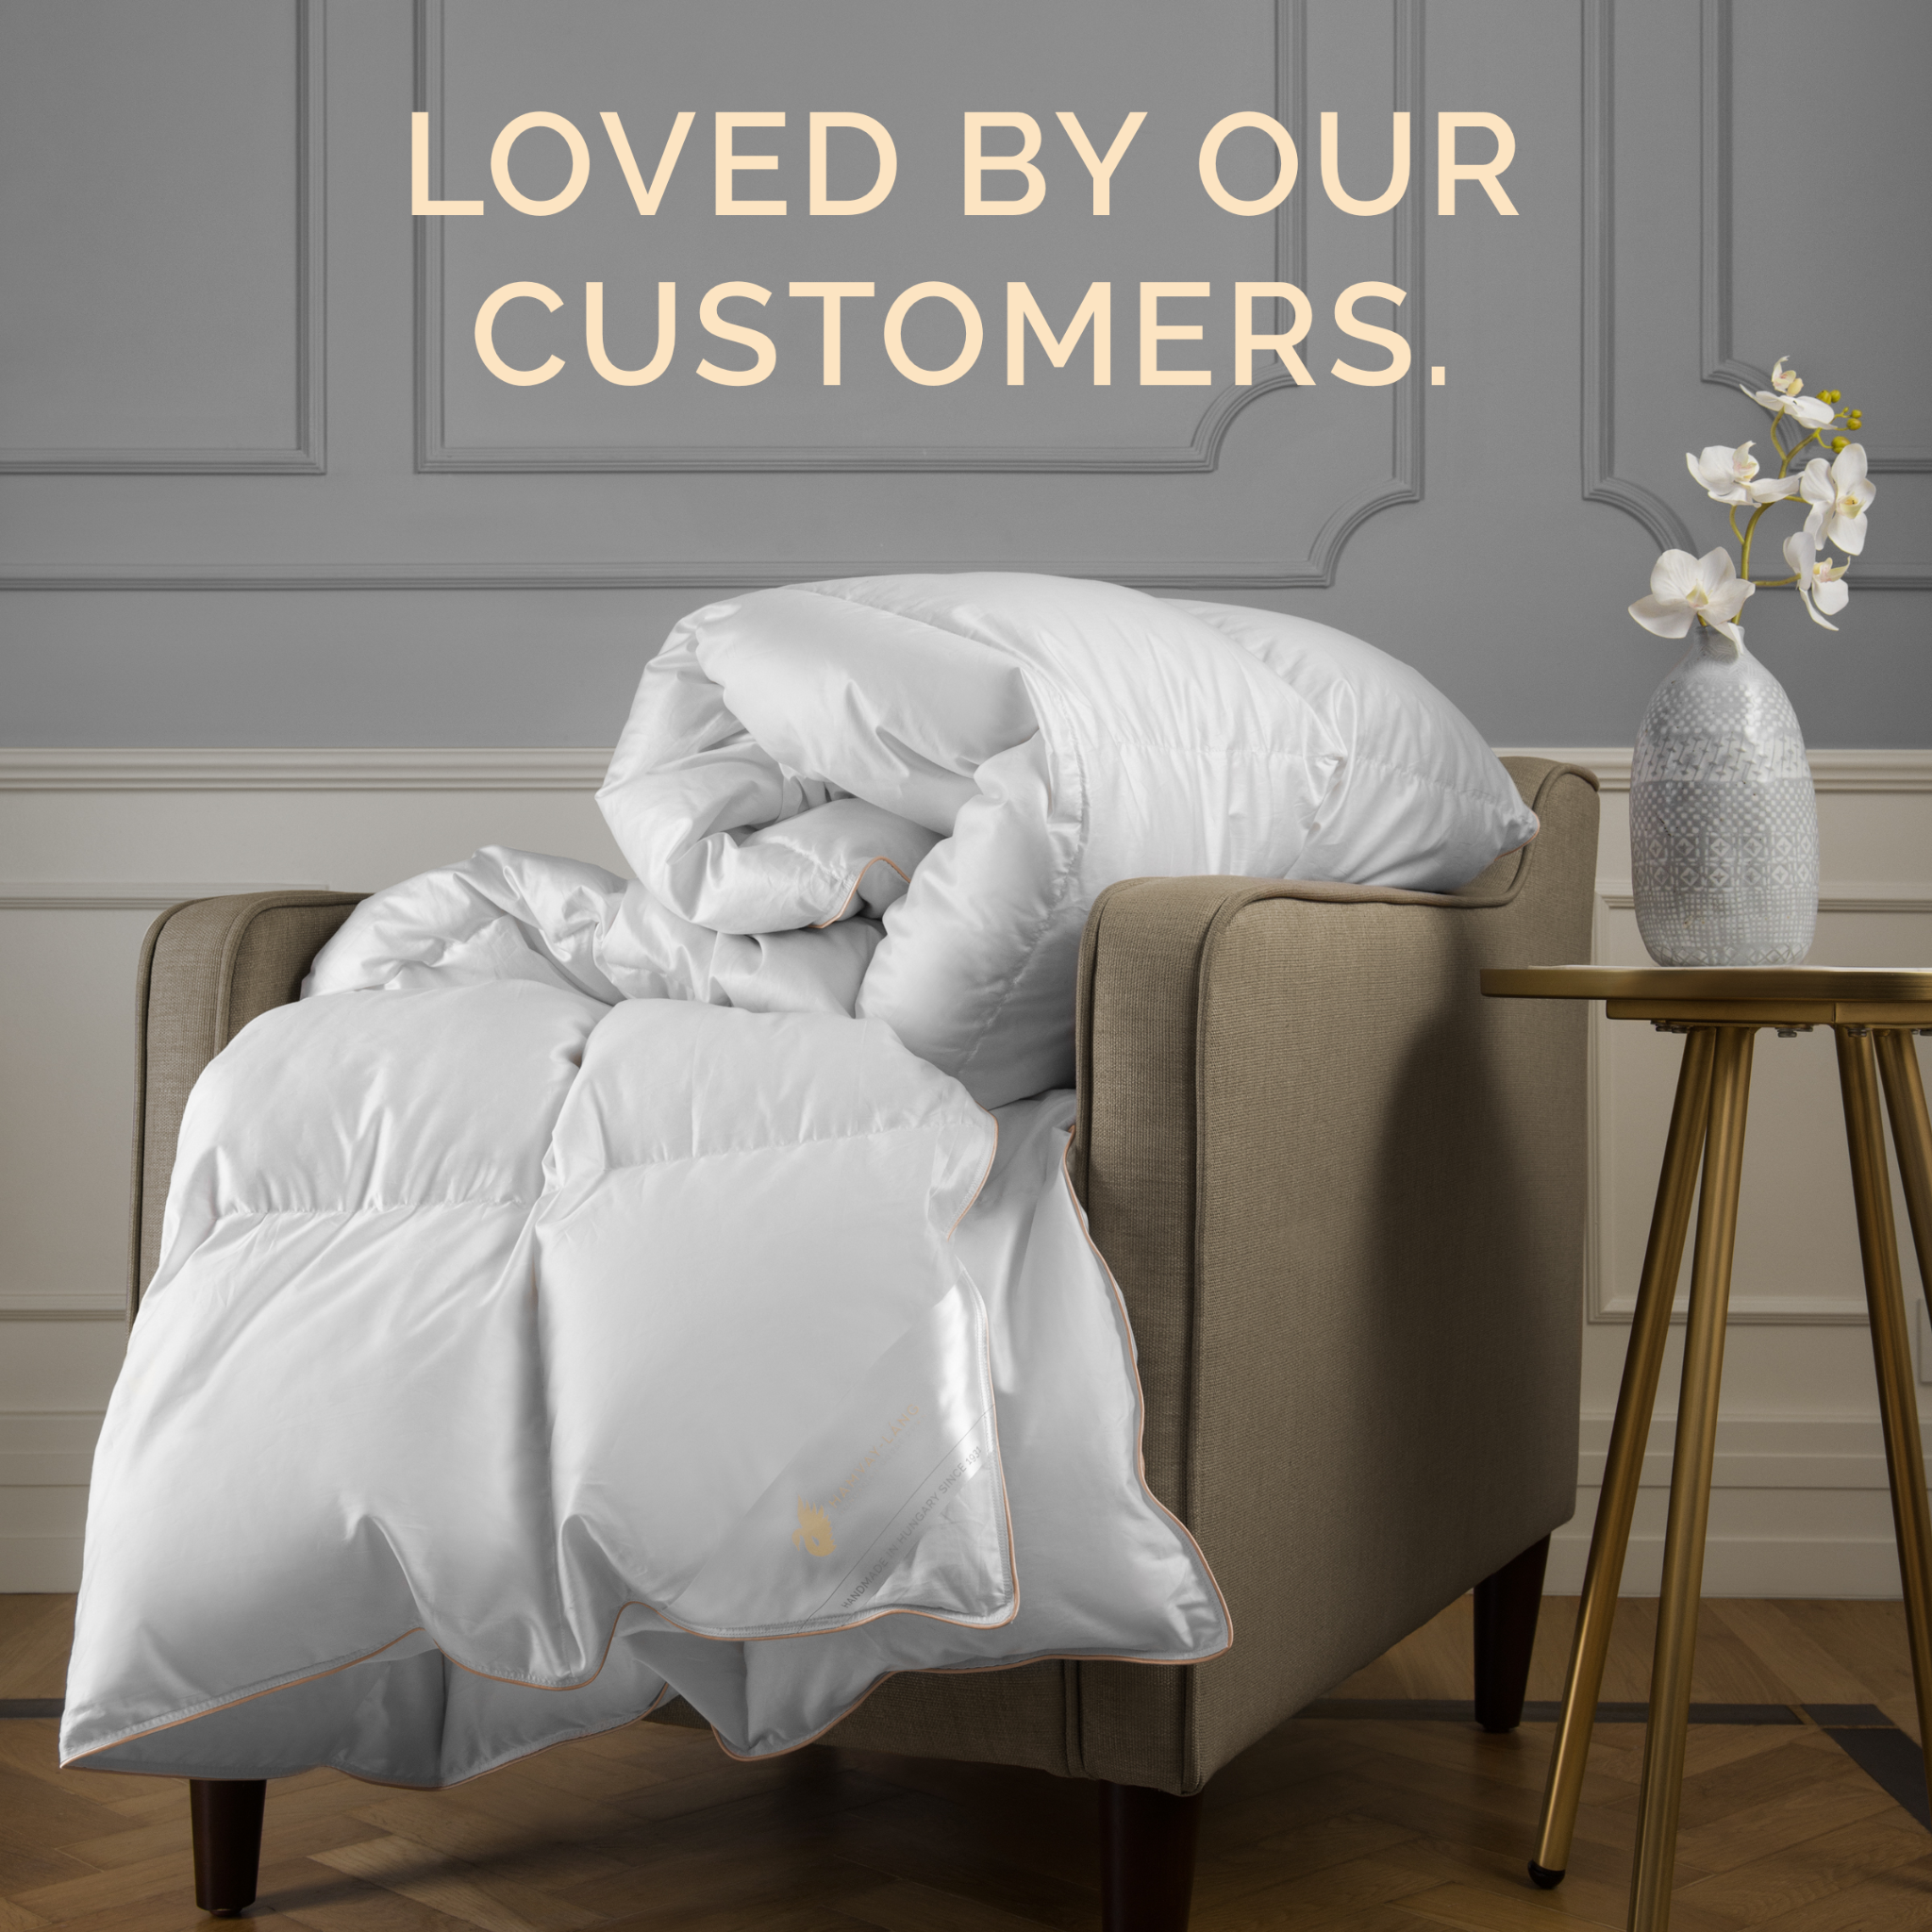 get_the_best_Comforters_ad